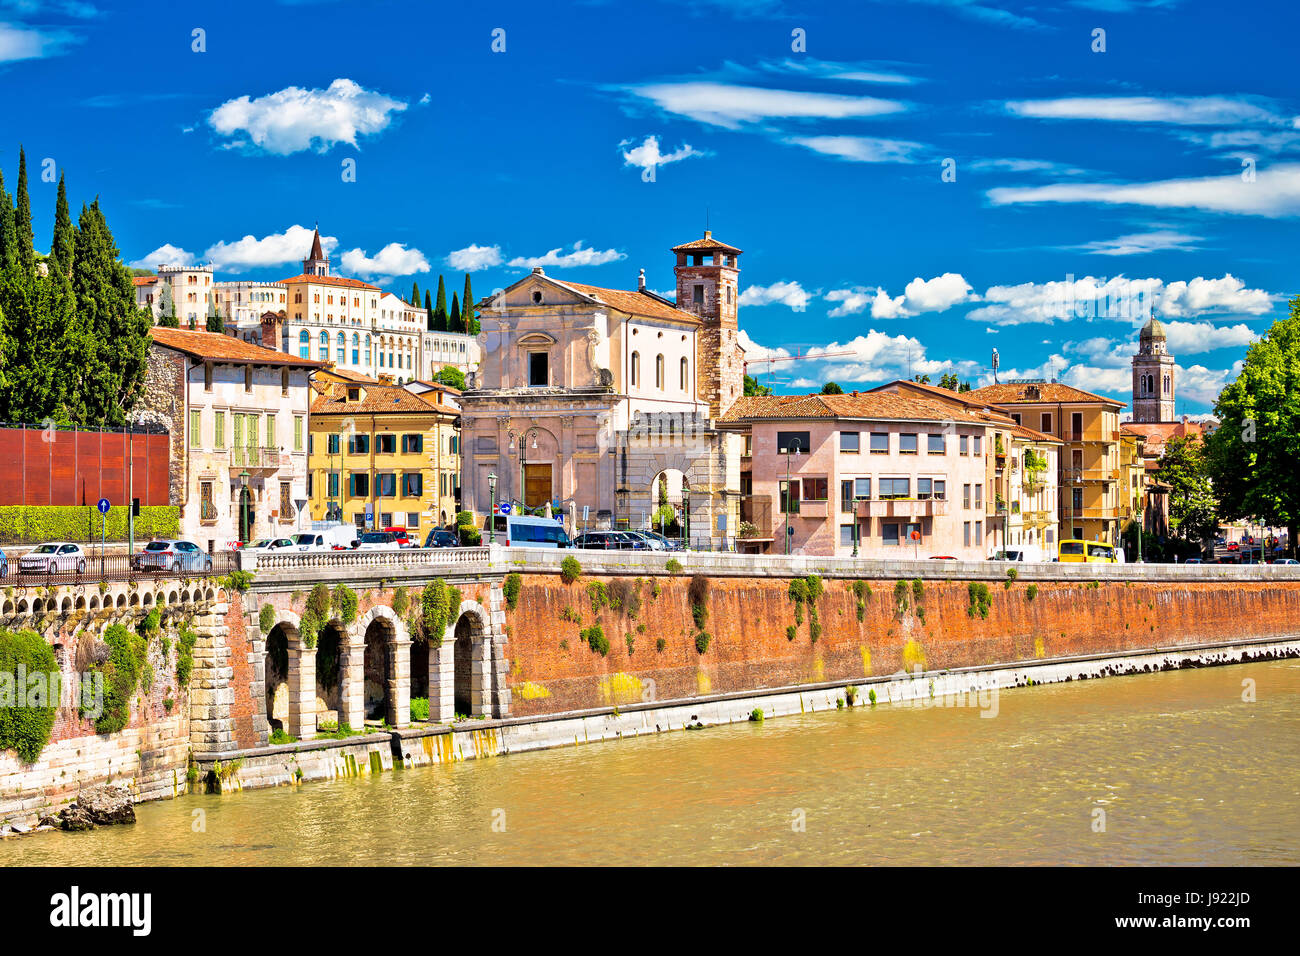 Città di Verona Adige riverfront vista, colorata architettura di destinazione turistica nella regione Veneto, Italia Foto Stock